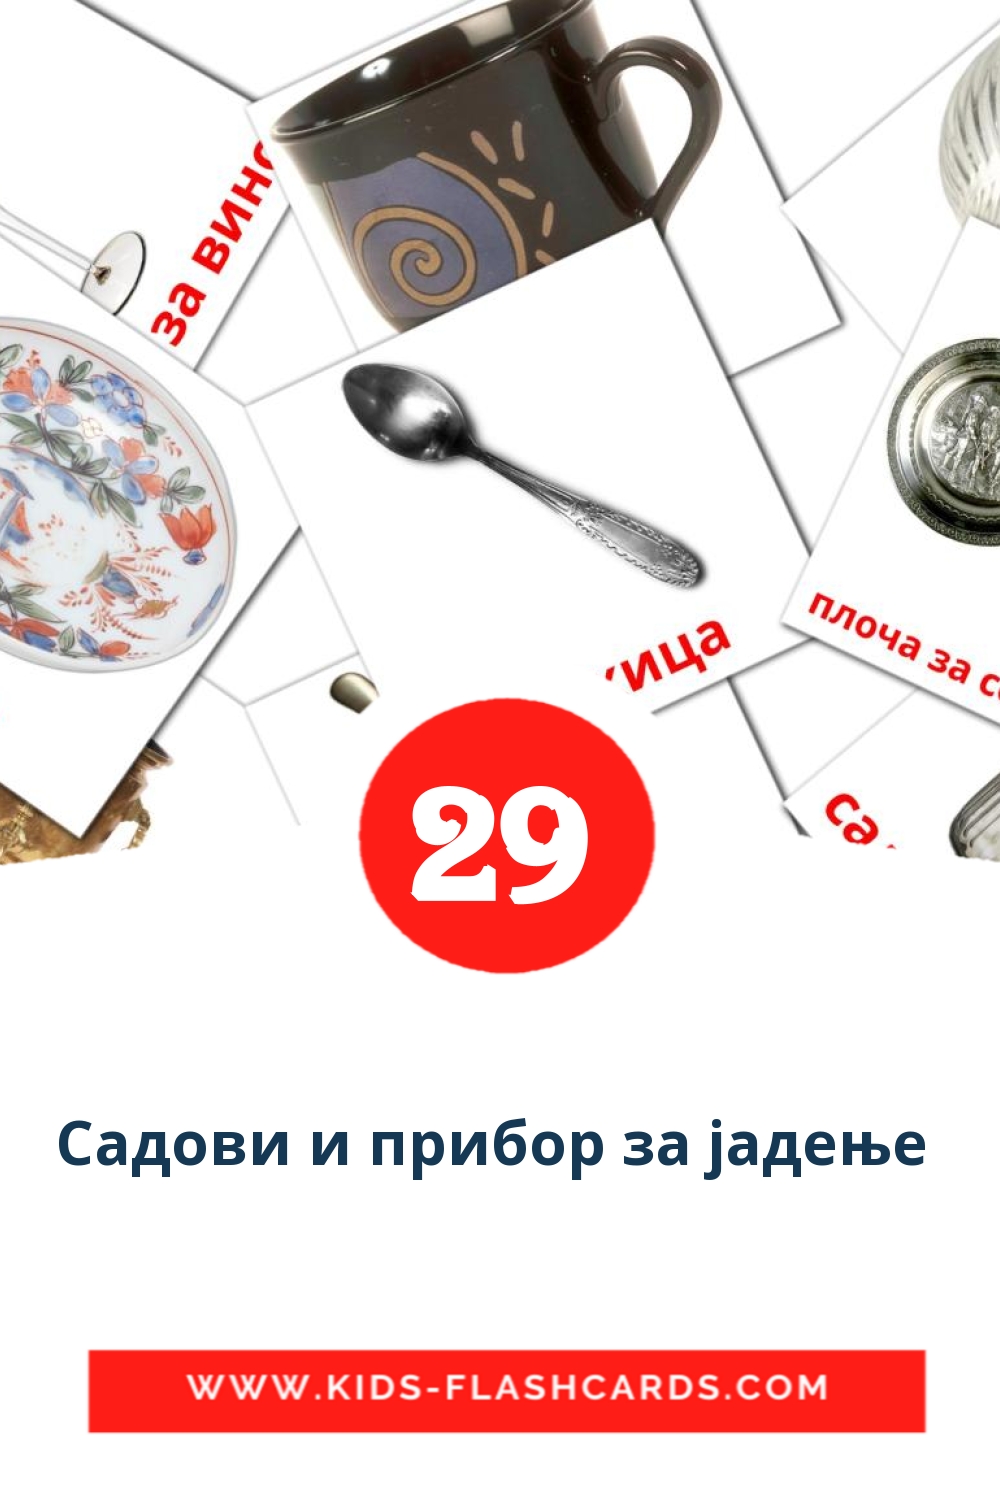 Садови и прибор за јадење  на македонском для Детского Сада (29 карточек)